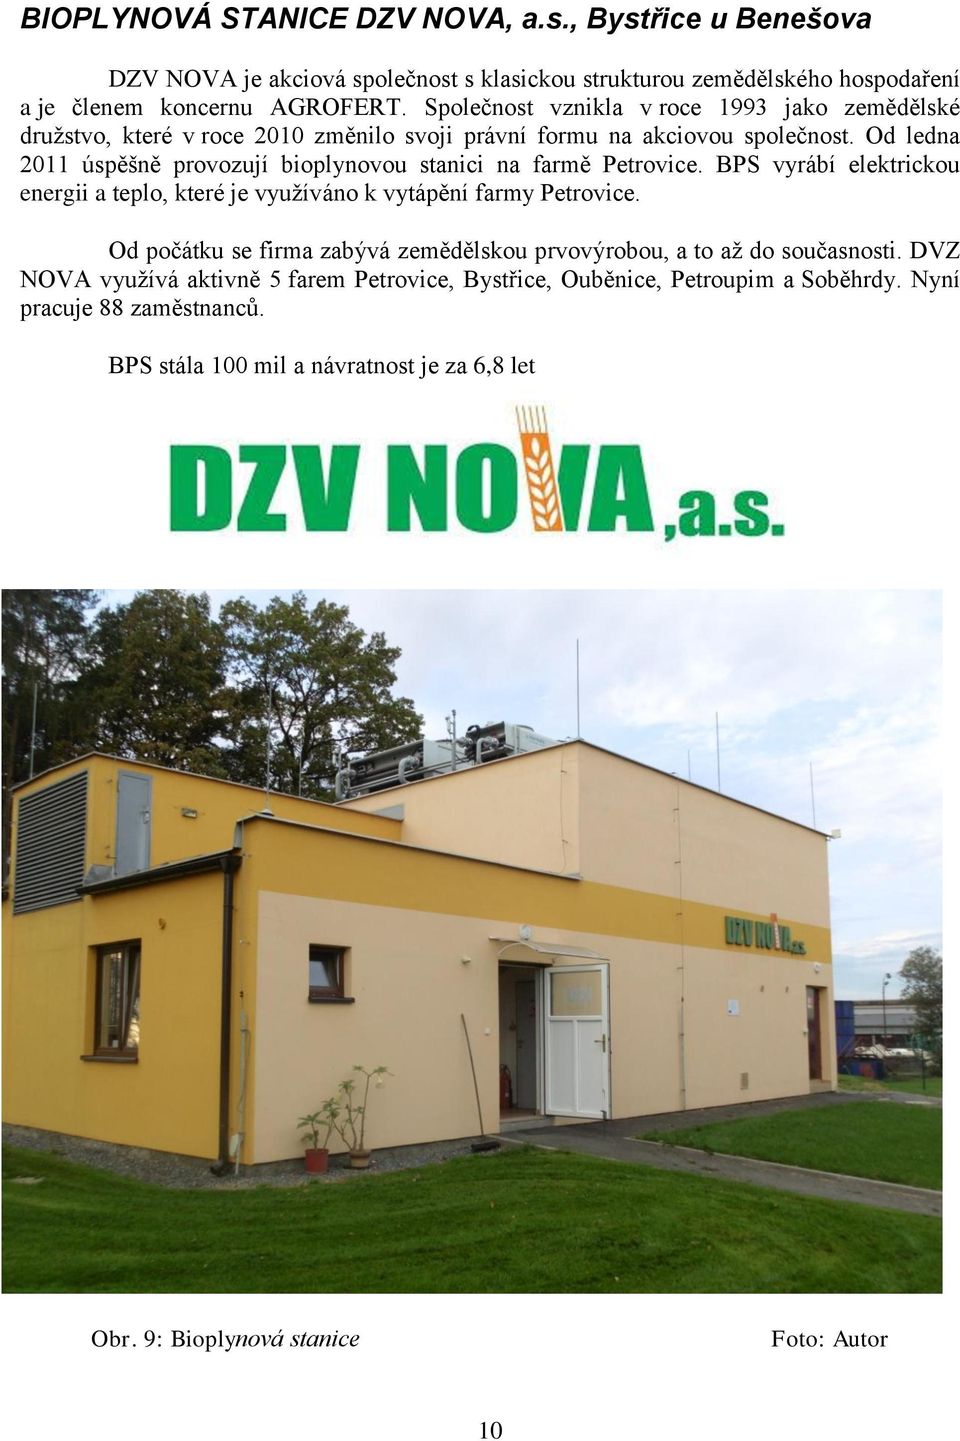 Od ledna 2011 úspěšně provozují bioplynovou stanici na farmě Petrovice. BPS vyrábí elektrickou energii a teplo, které je využíváno k vytápění farmy Petrovice.